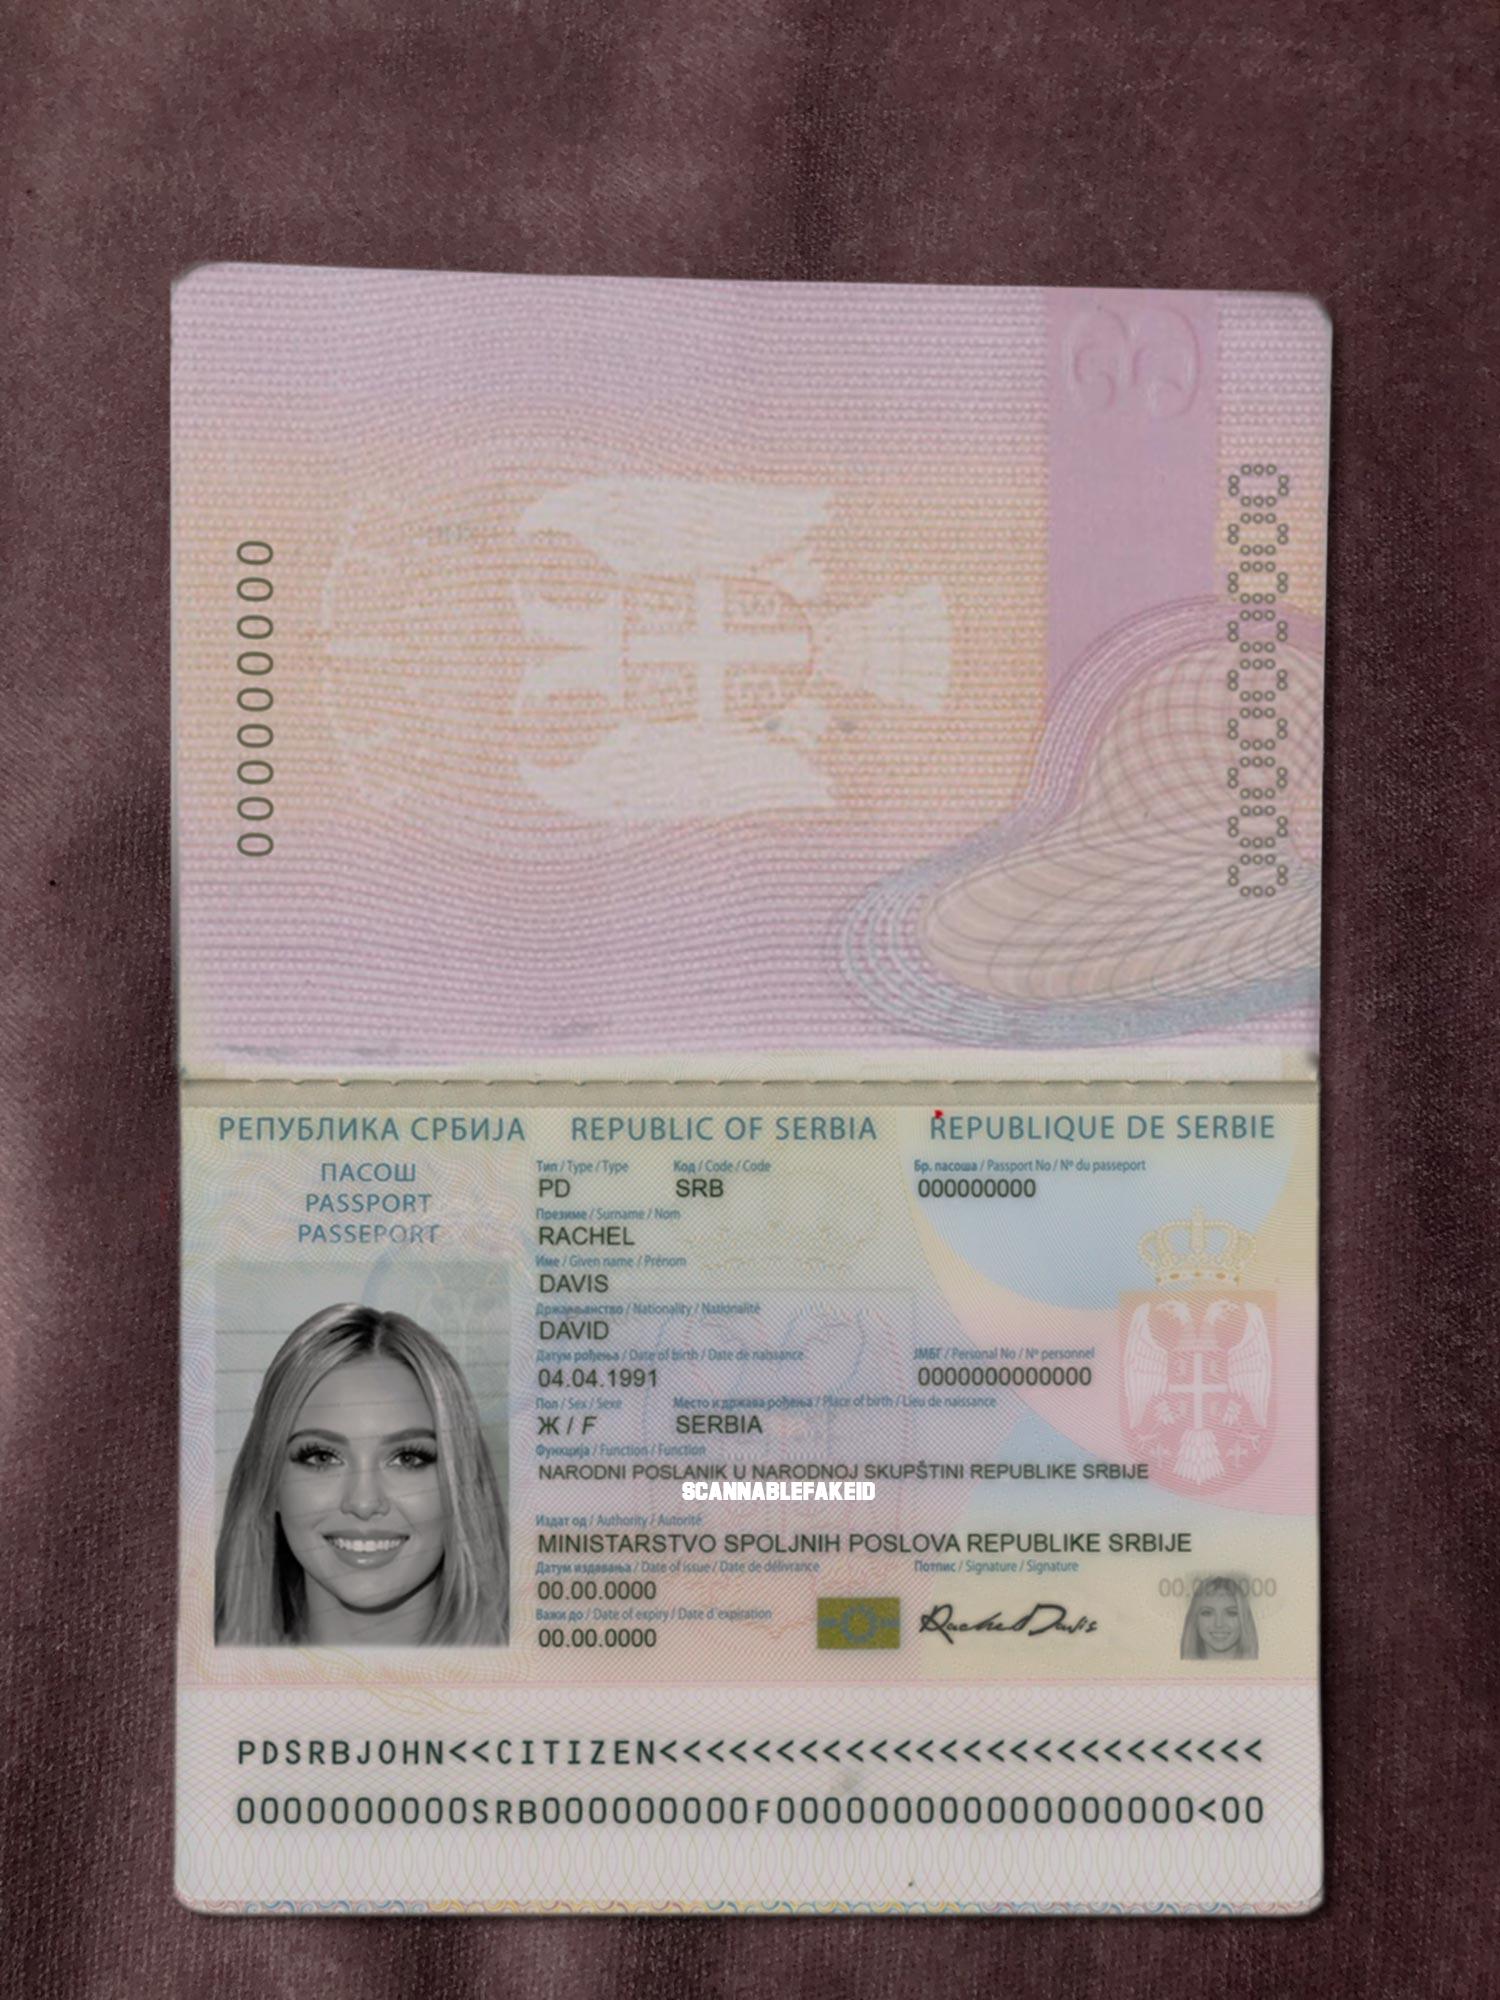 Serbia Fake Passport - Buy Scannable Fake ID Online - Fake Drivers License